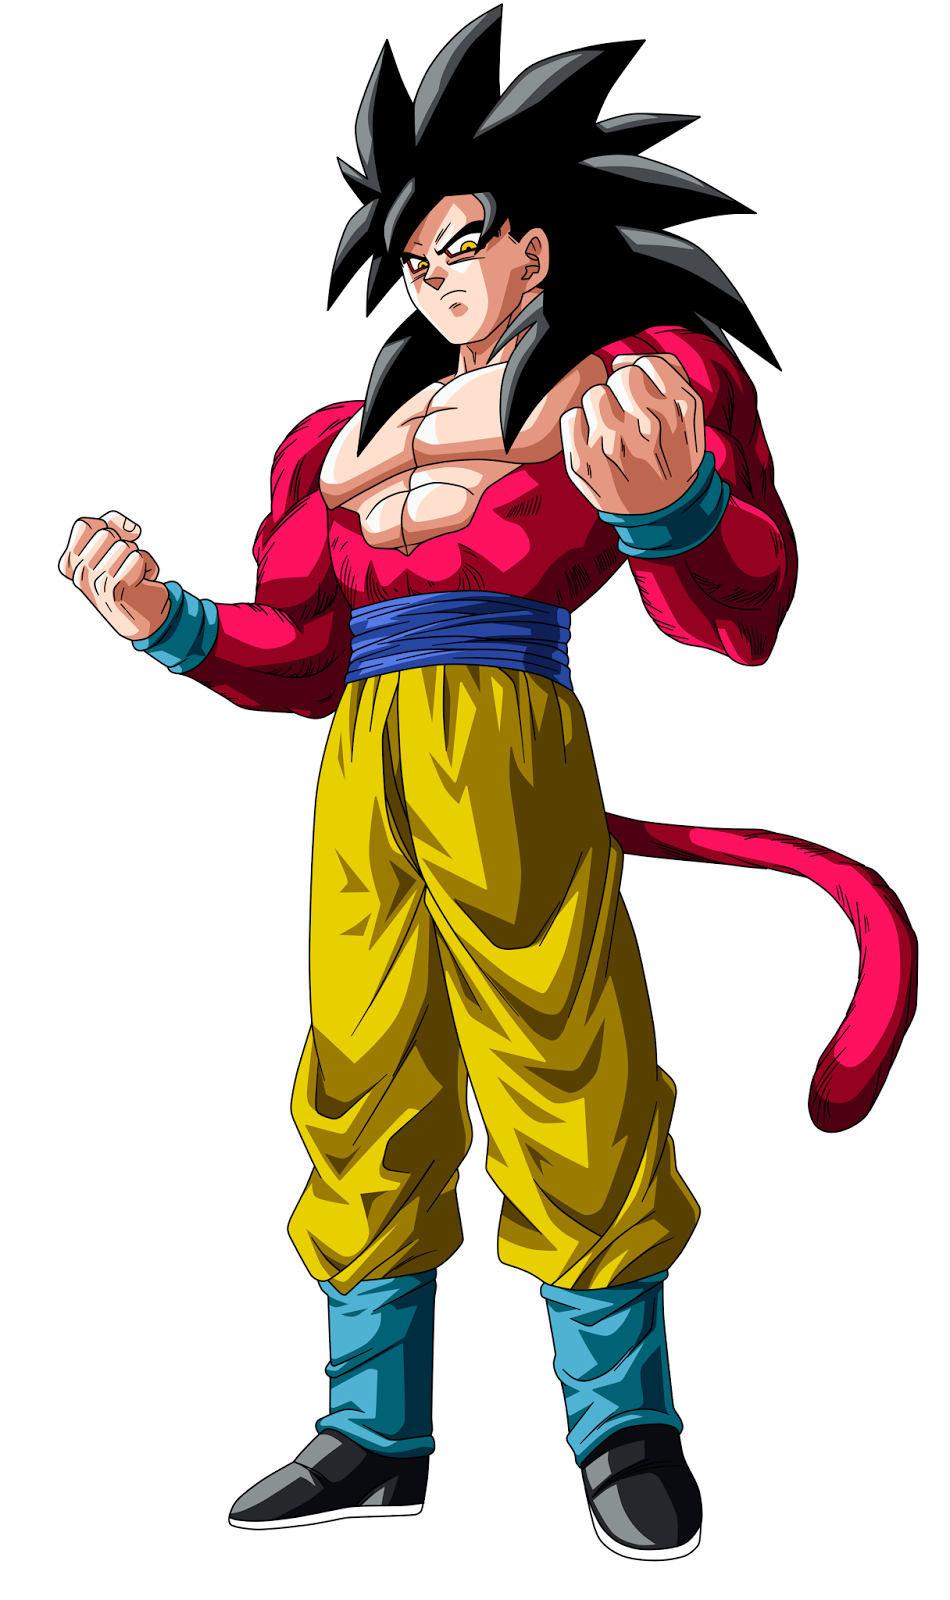  Gambar  Goku  Super Saiyan 1 2 3 4 5 Terbaru Terbaru 2020